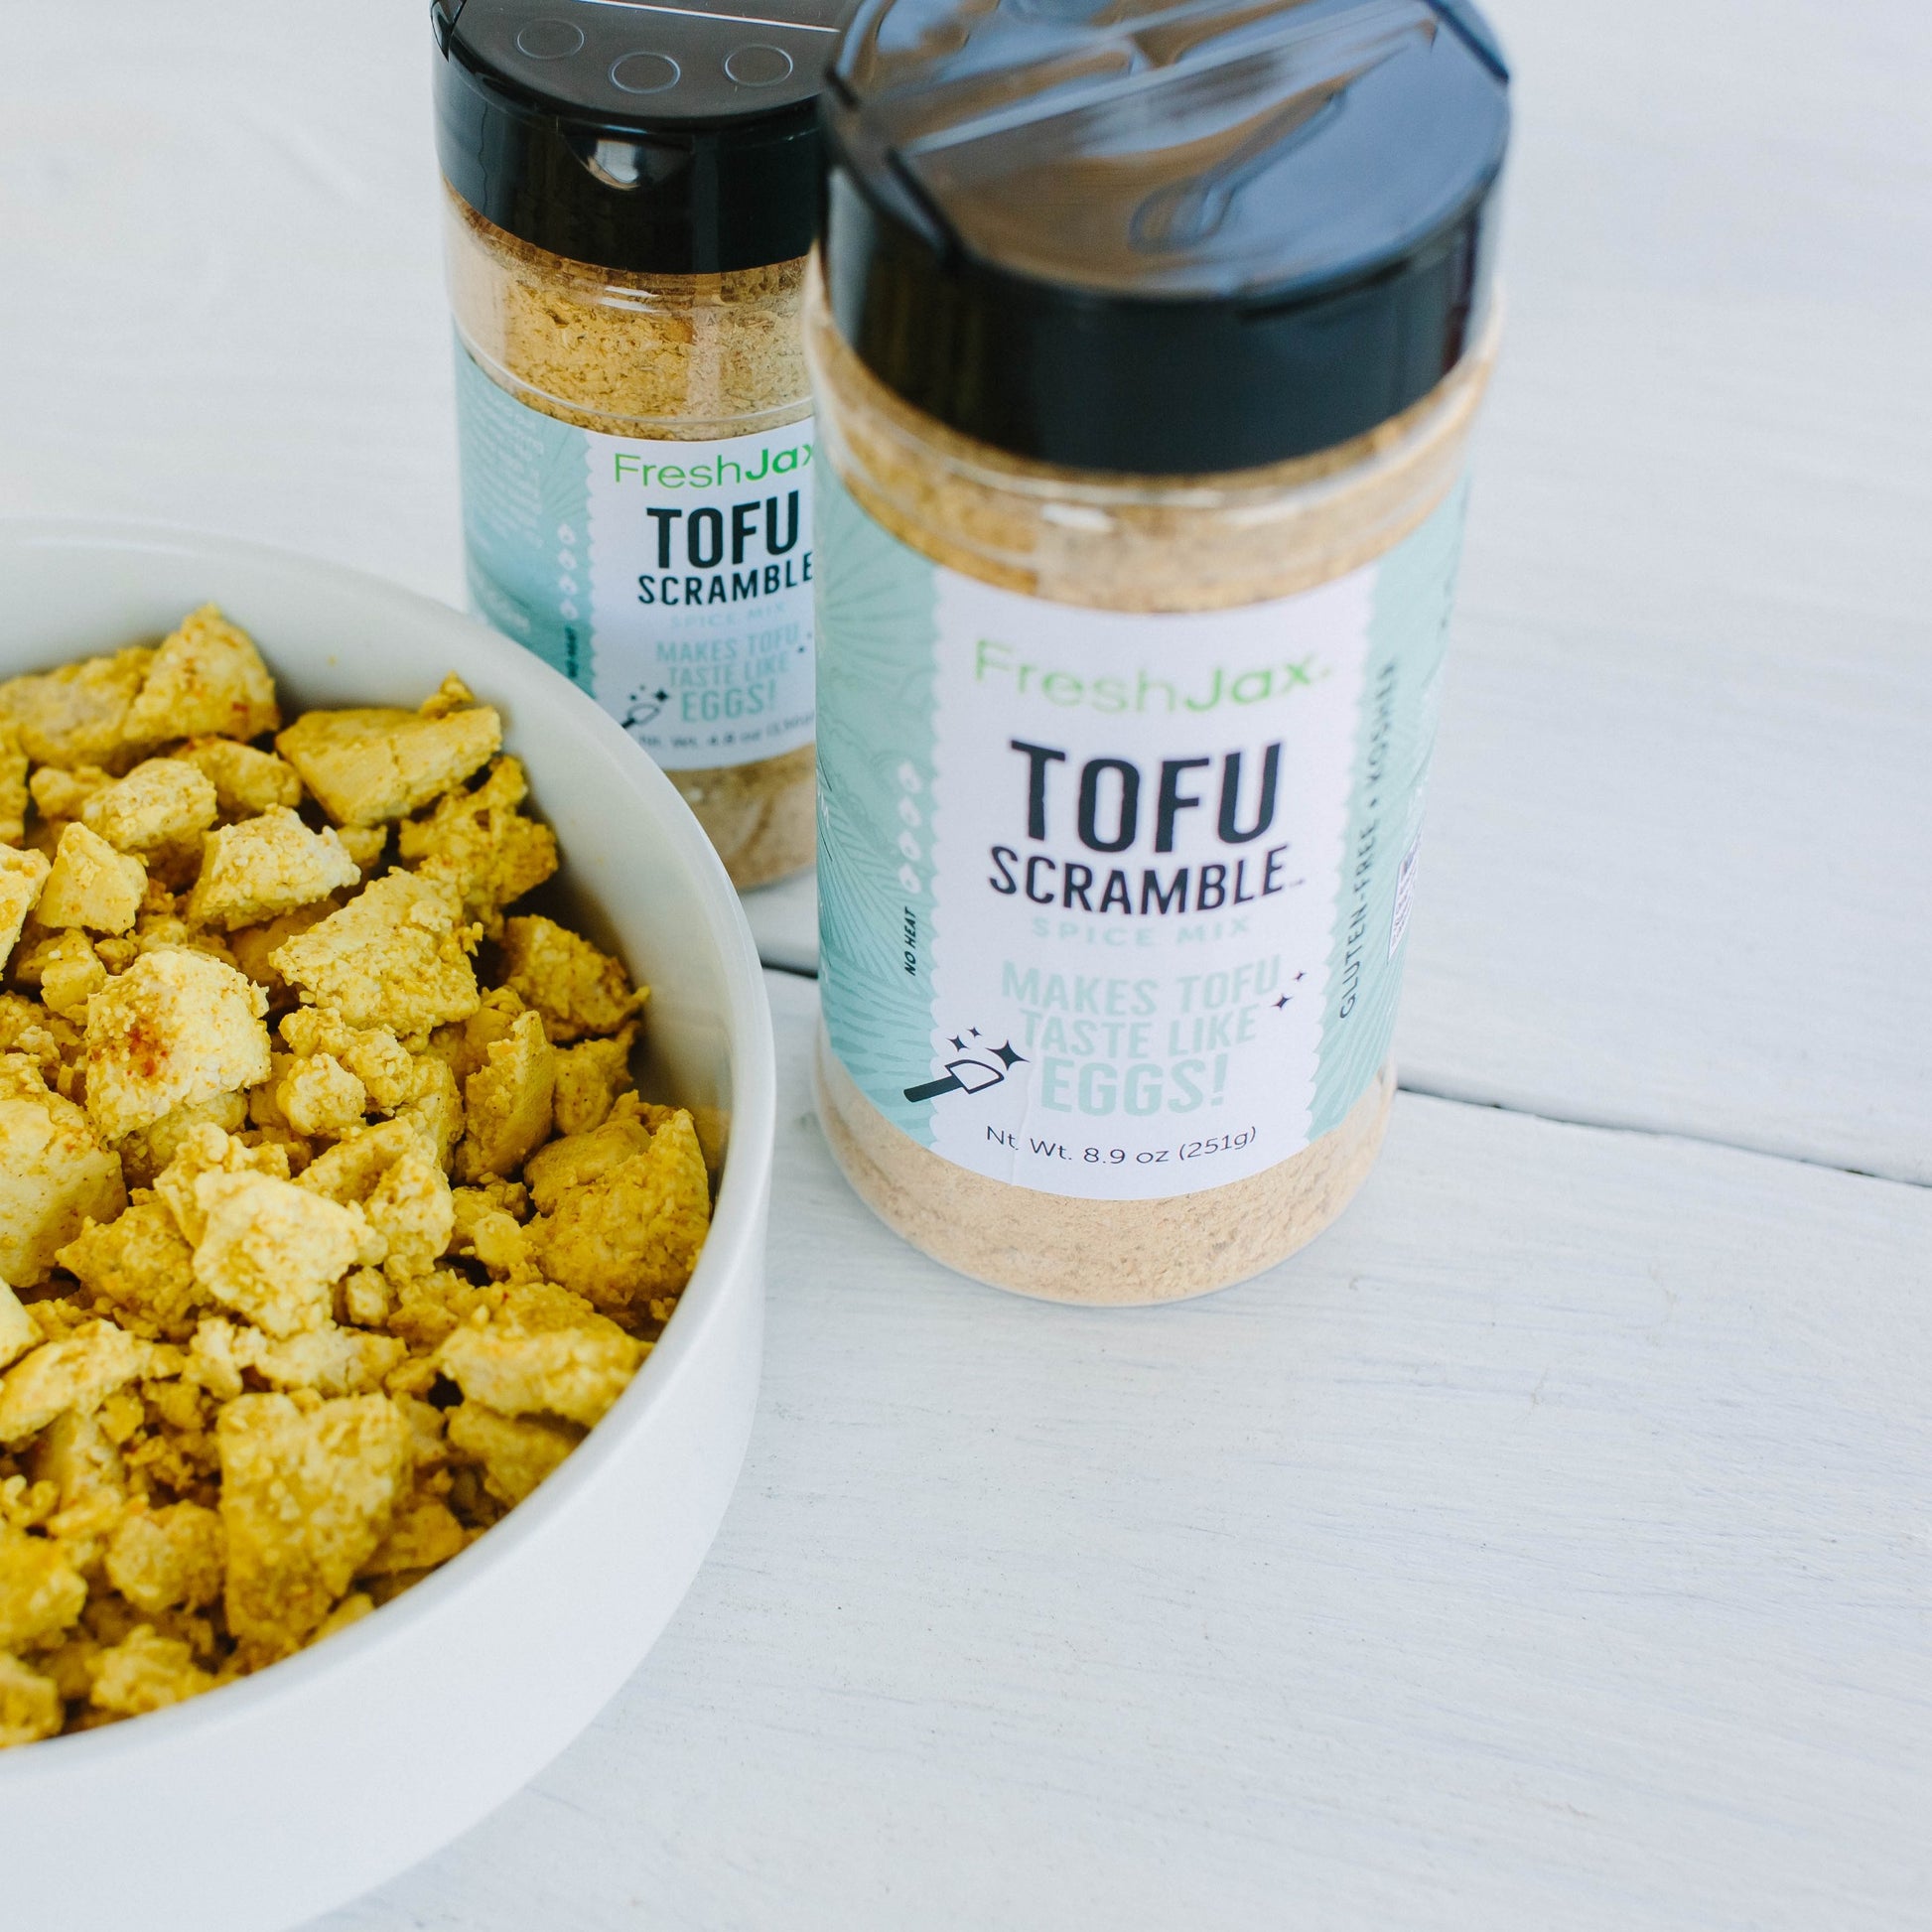 Tofu Scramble Seasoning next to bowl of tofu